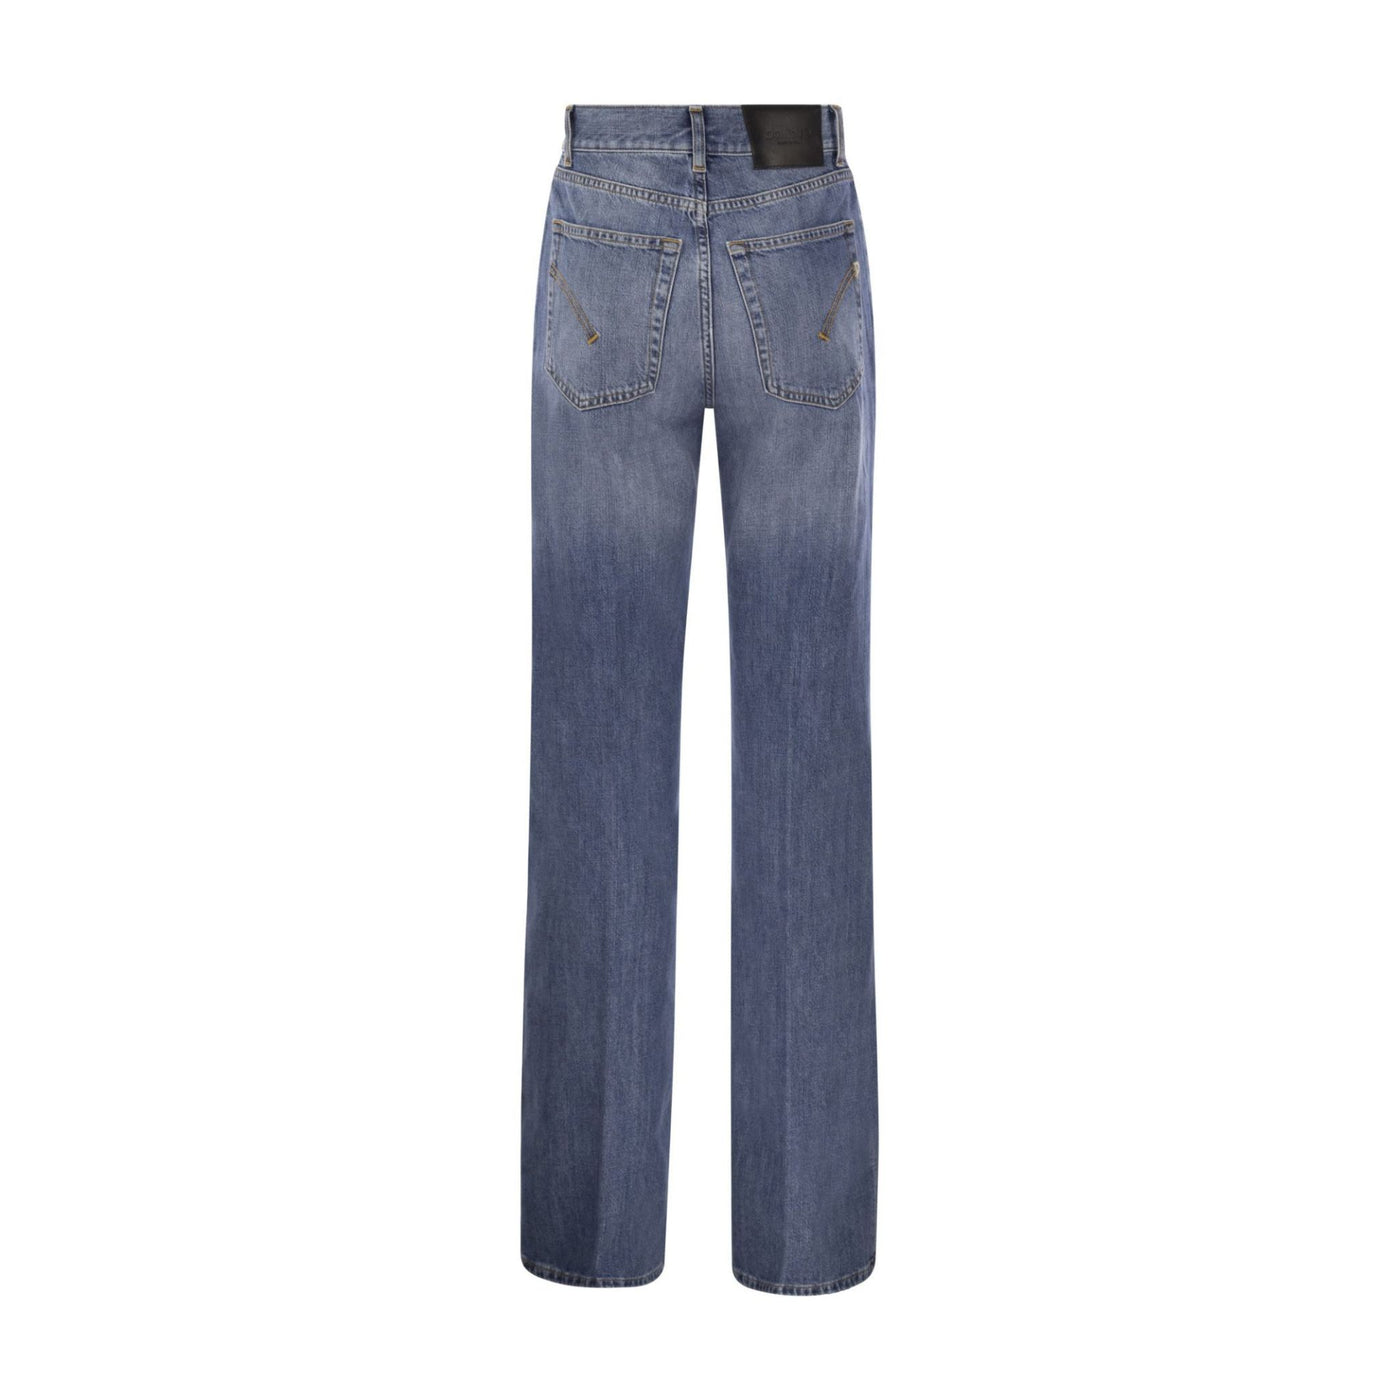 Jeans Donna dal lavaggio medio dotato di cinque tasche